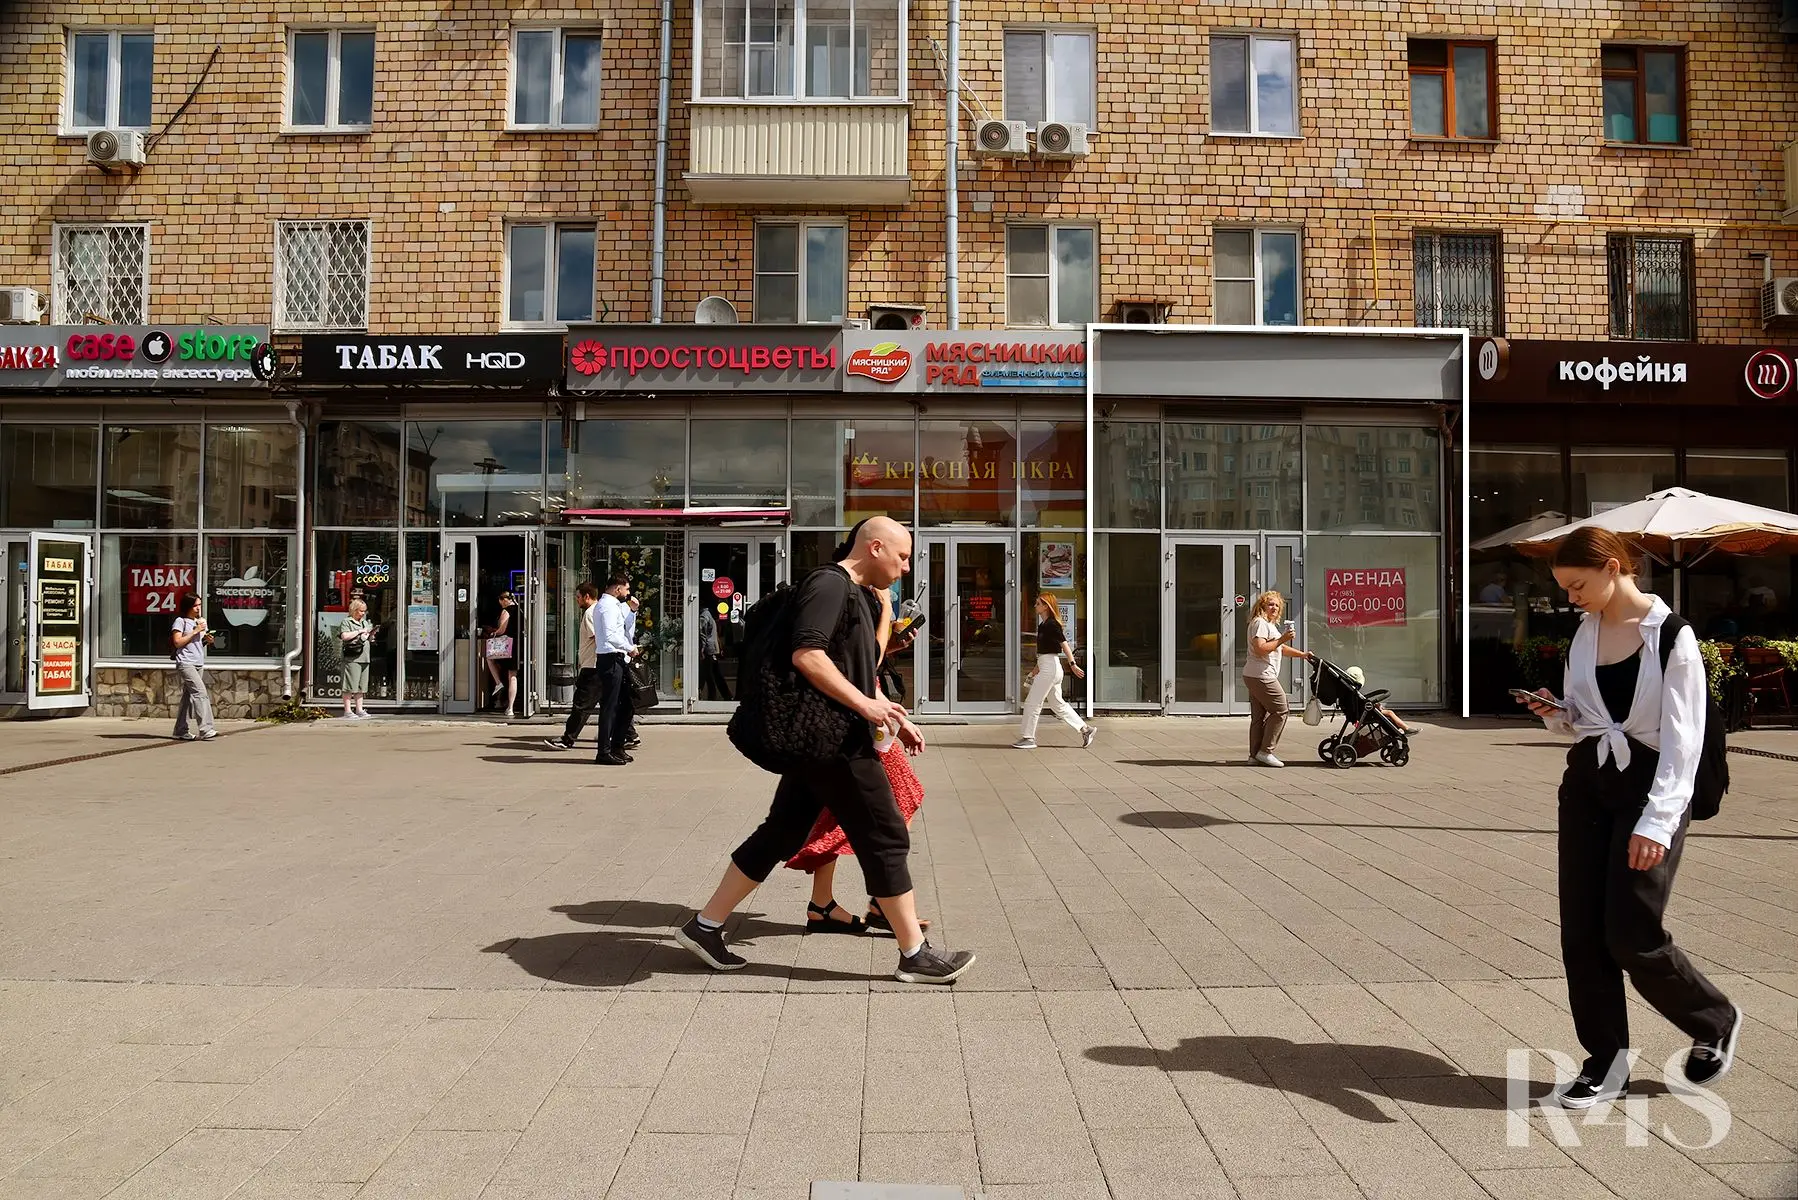 Аренда торгового помещения площадью 27.2 м2 в Москве: Ленинградский проспект, 74 R4S | Realty4Sale